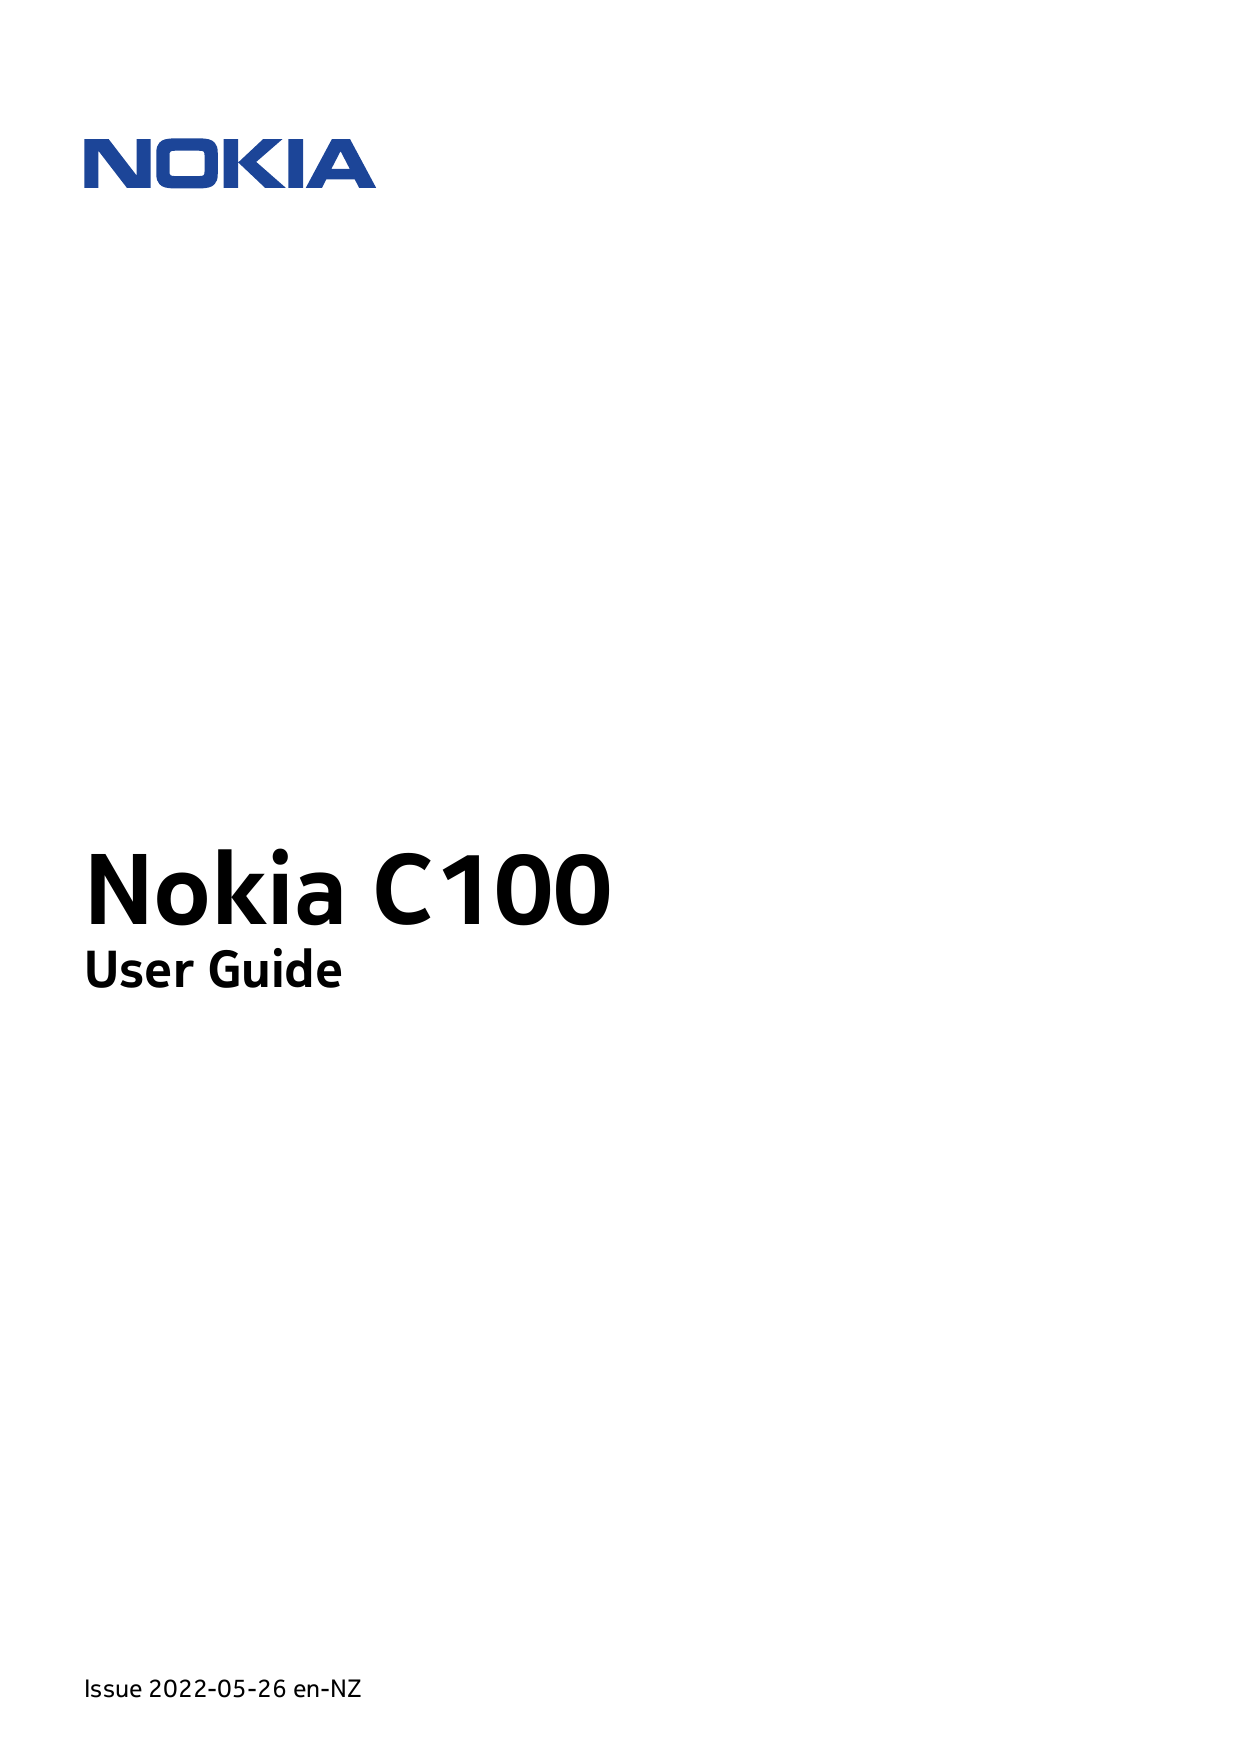 Nokia C100User GuideIssue 2022-05-26 en-NZ